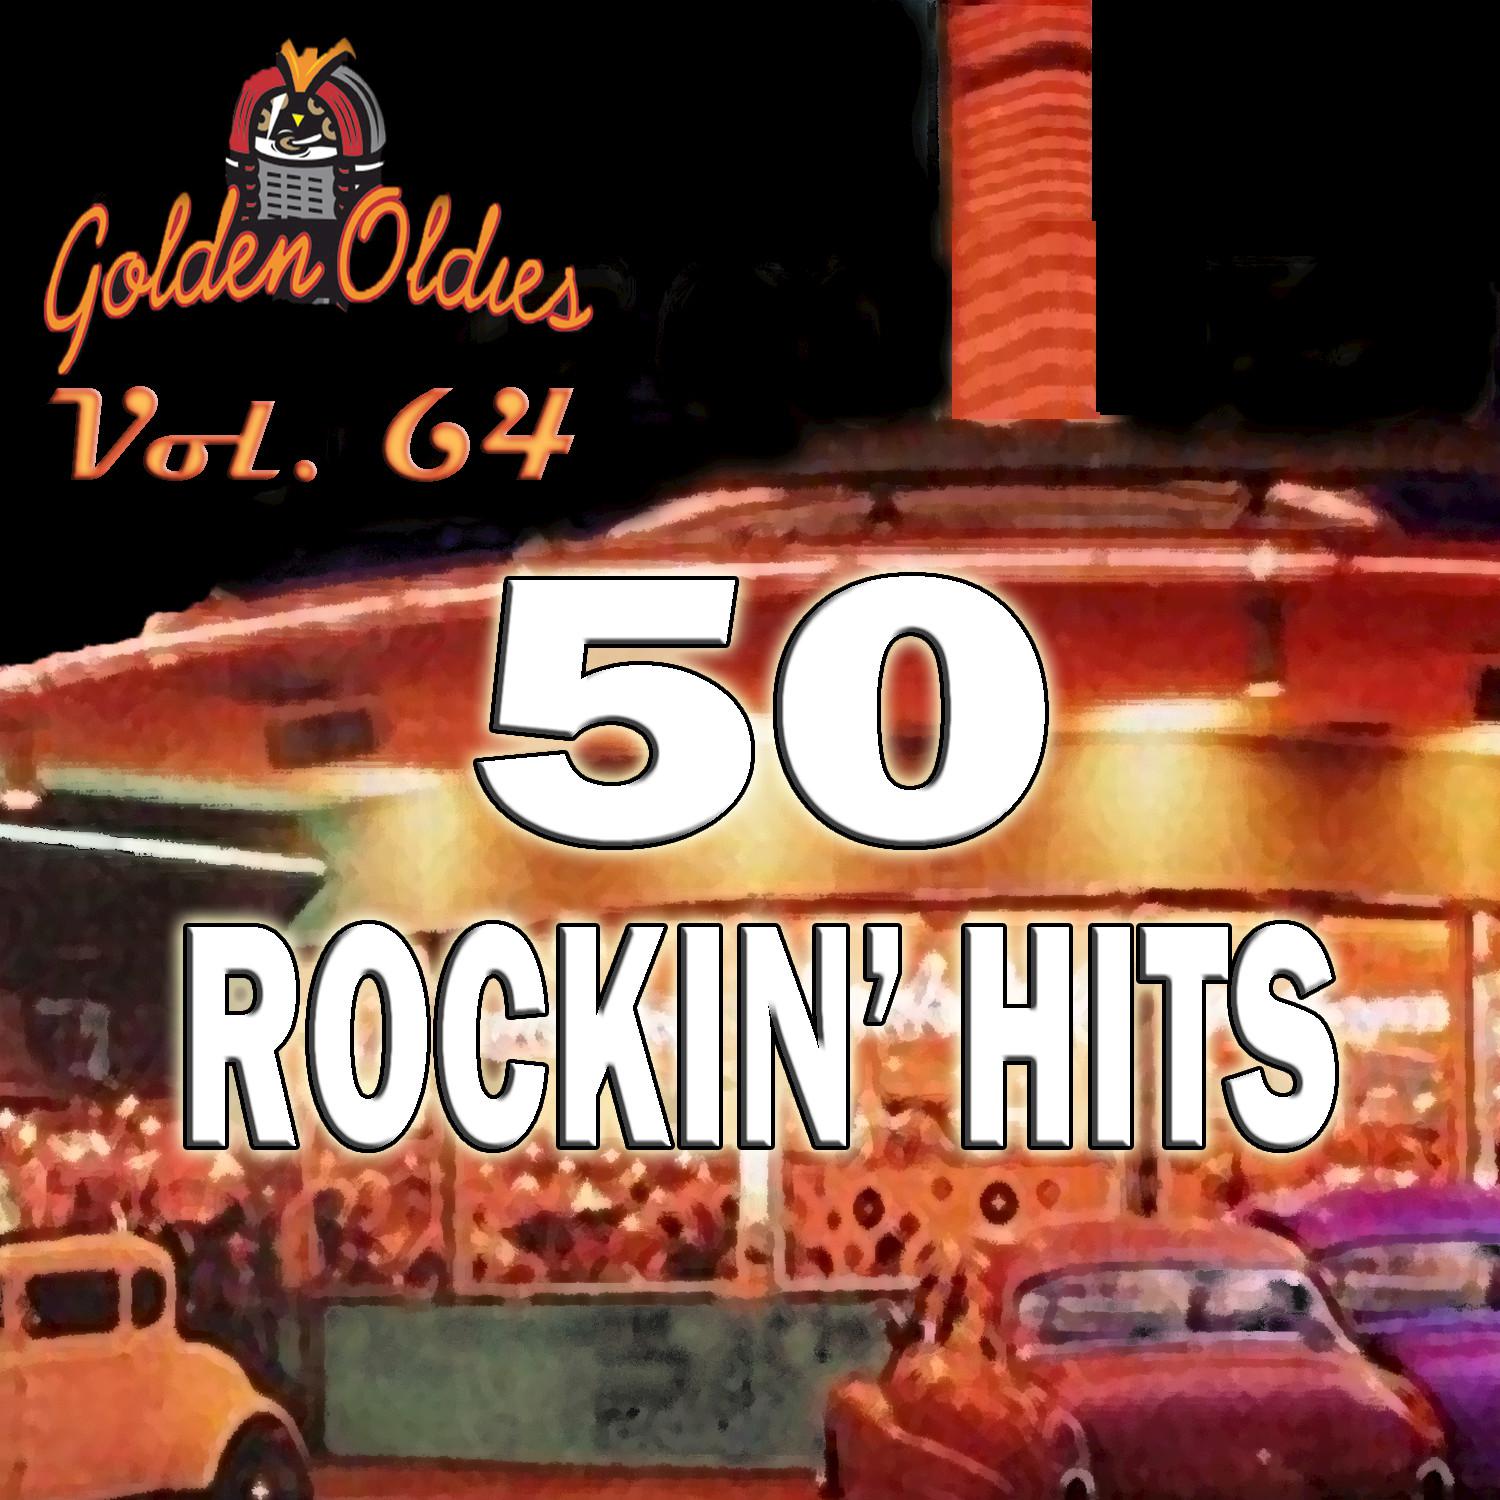 50 Rockin' Hits, Vol. 64